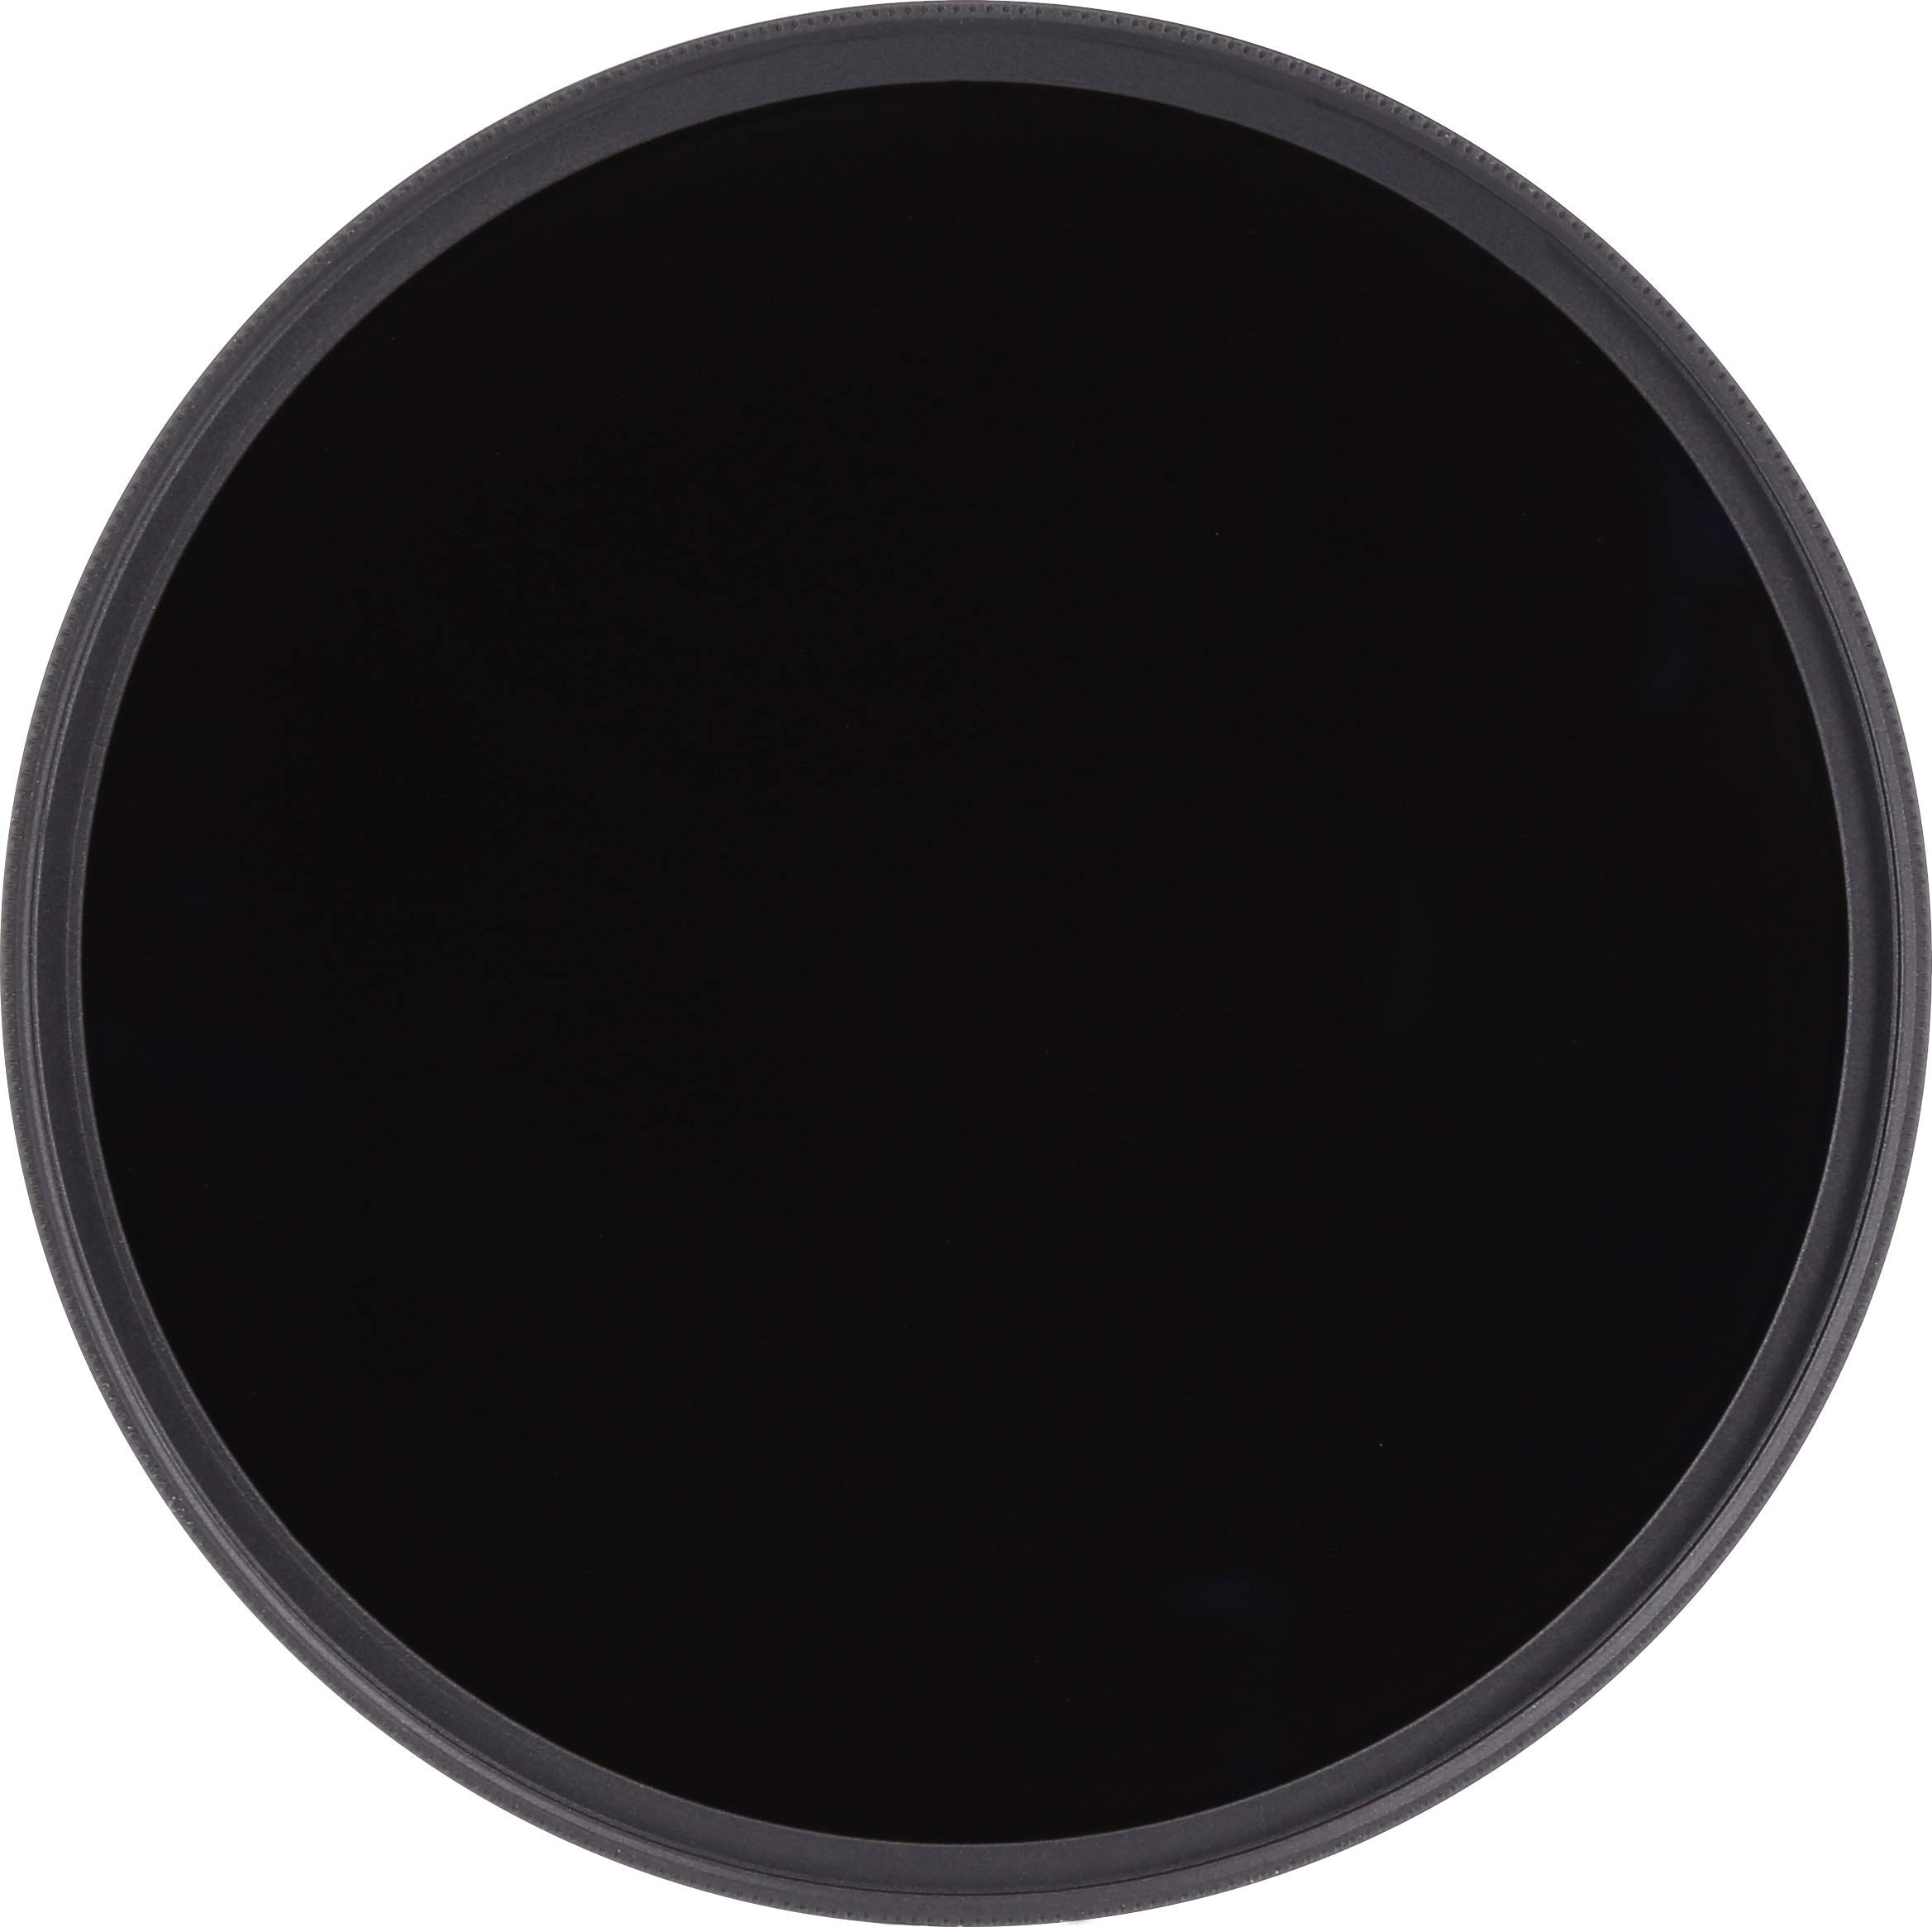 Rollei F:X Pro Rundfilter (72 mm, ND 2000 Filter) Neutraler Graufilter (Neutraldichtefilter) aus Gorilla Glas mit spezieller Beschichtung – ND8 (11 Stopps/3,3)